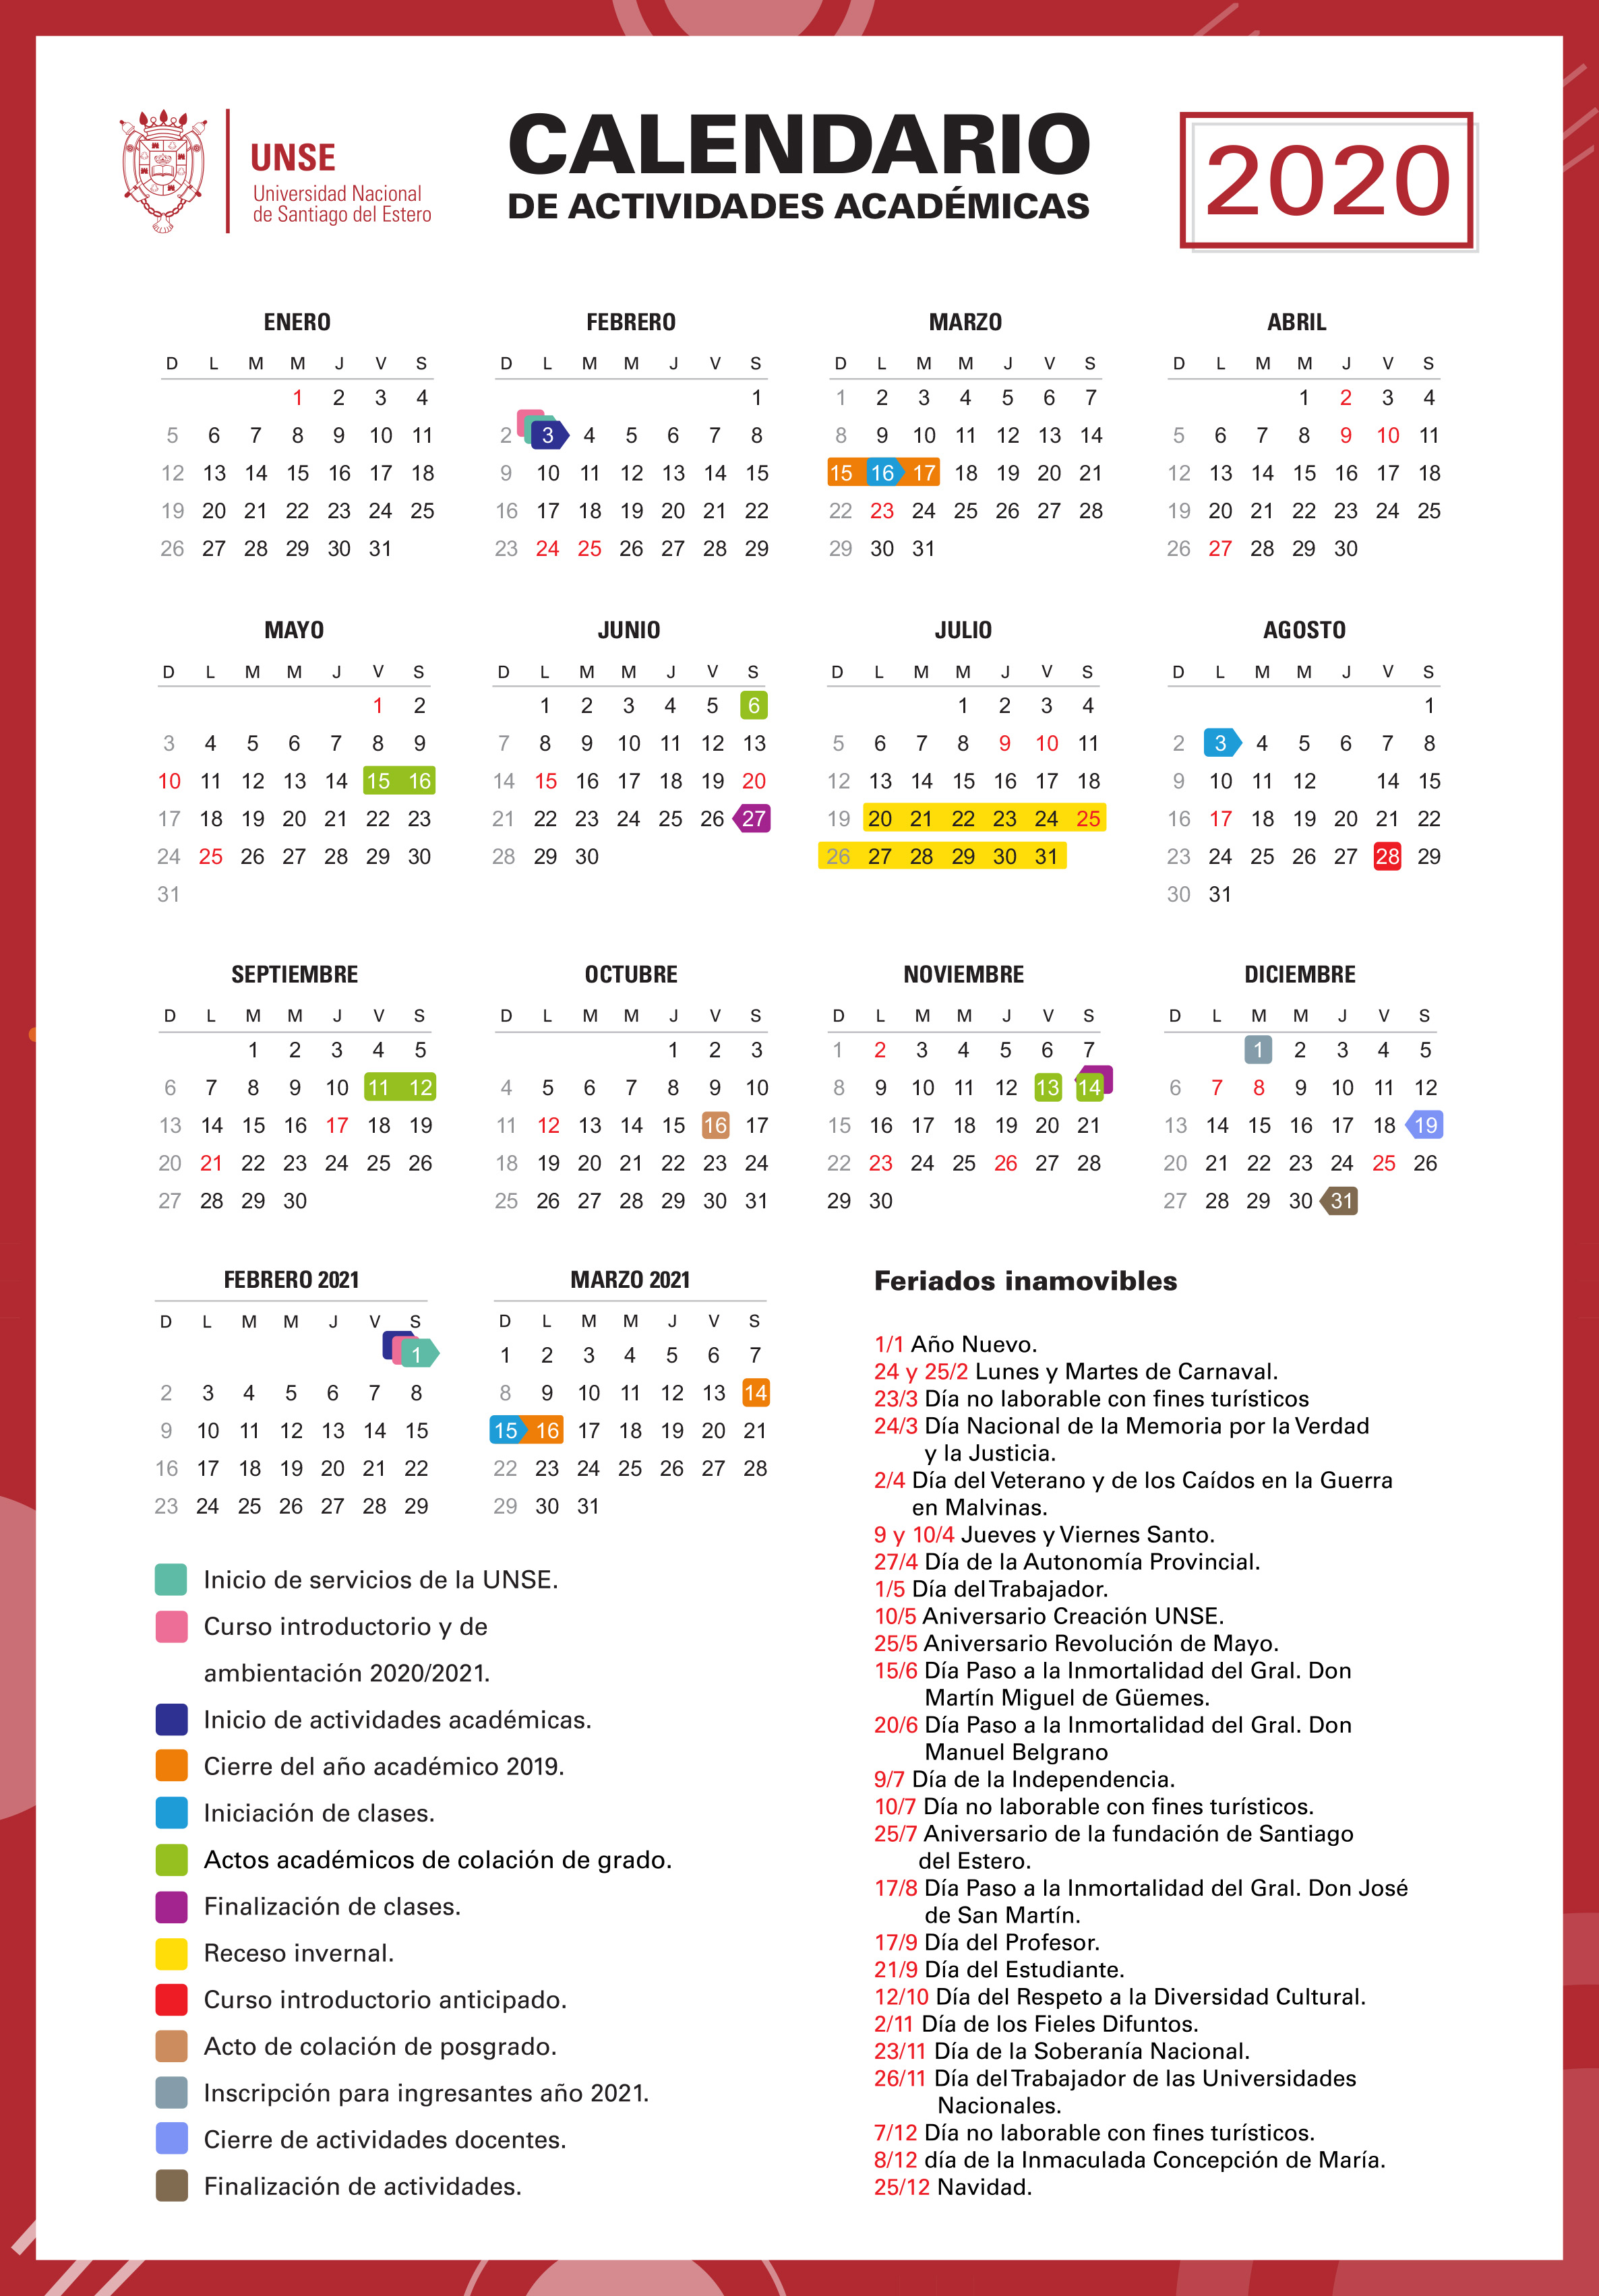 Calendario UNSE 2020